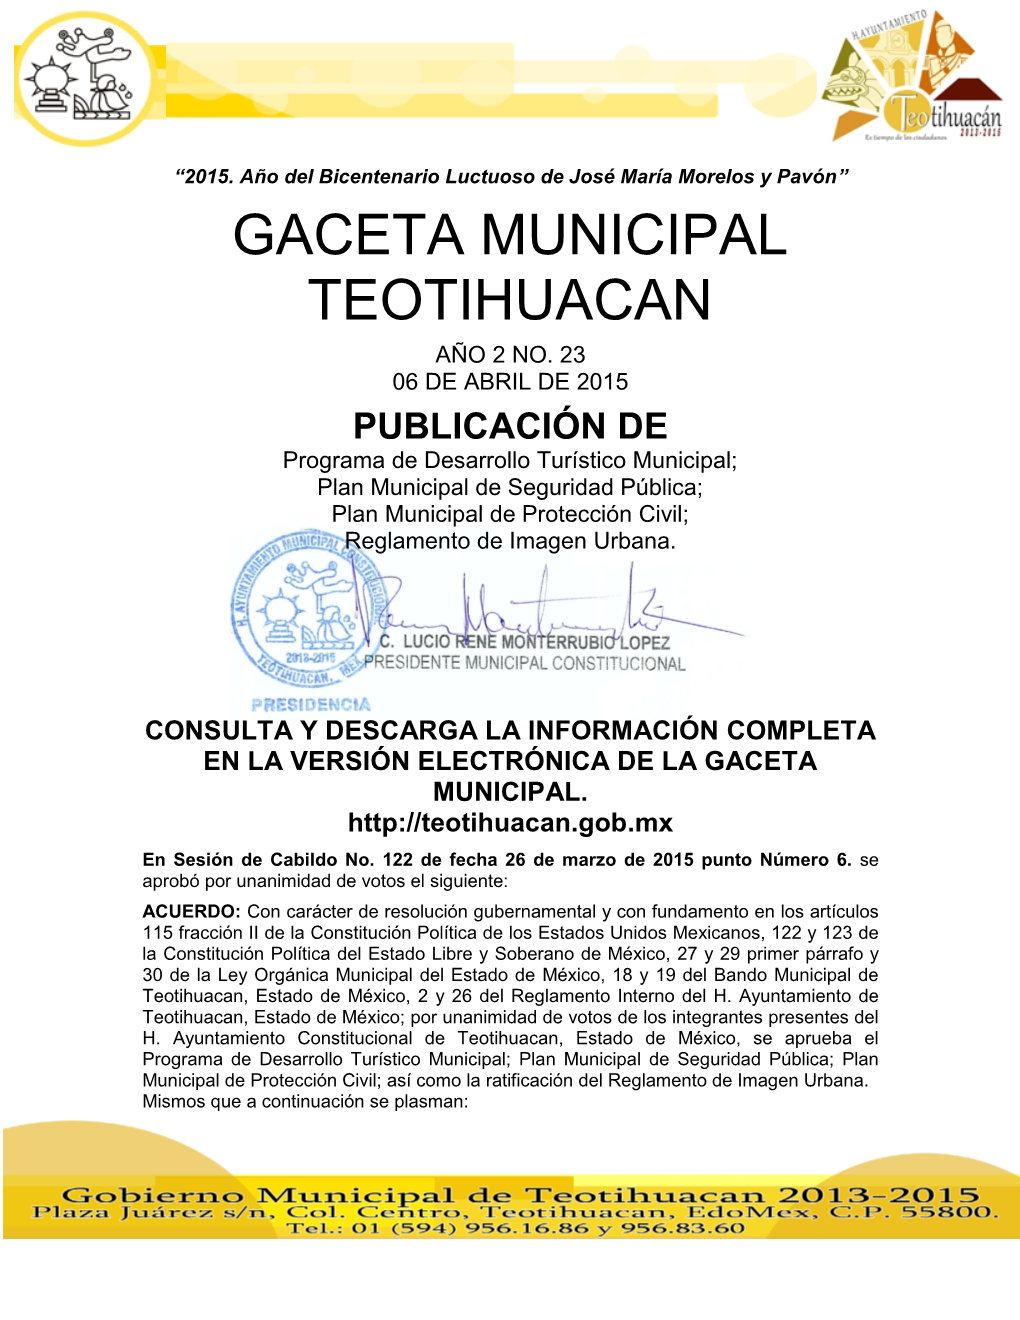 Gaceta Municipal Teotihuacan Año 2 No